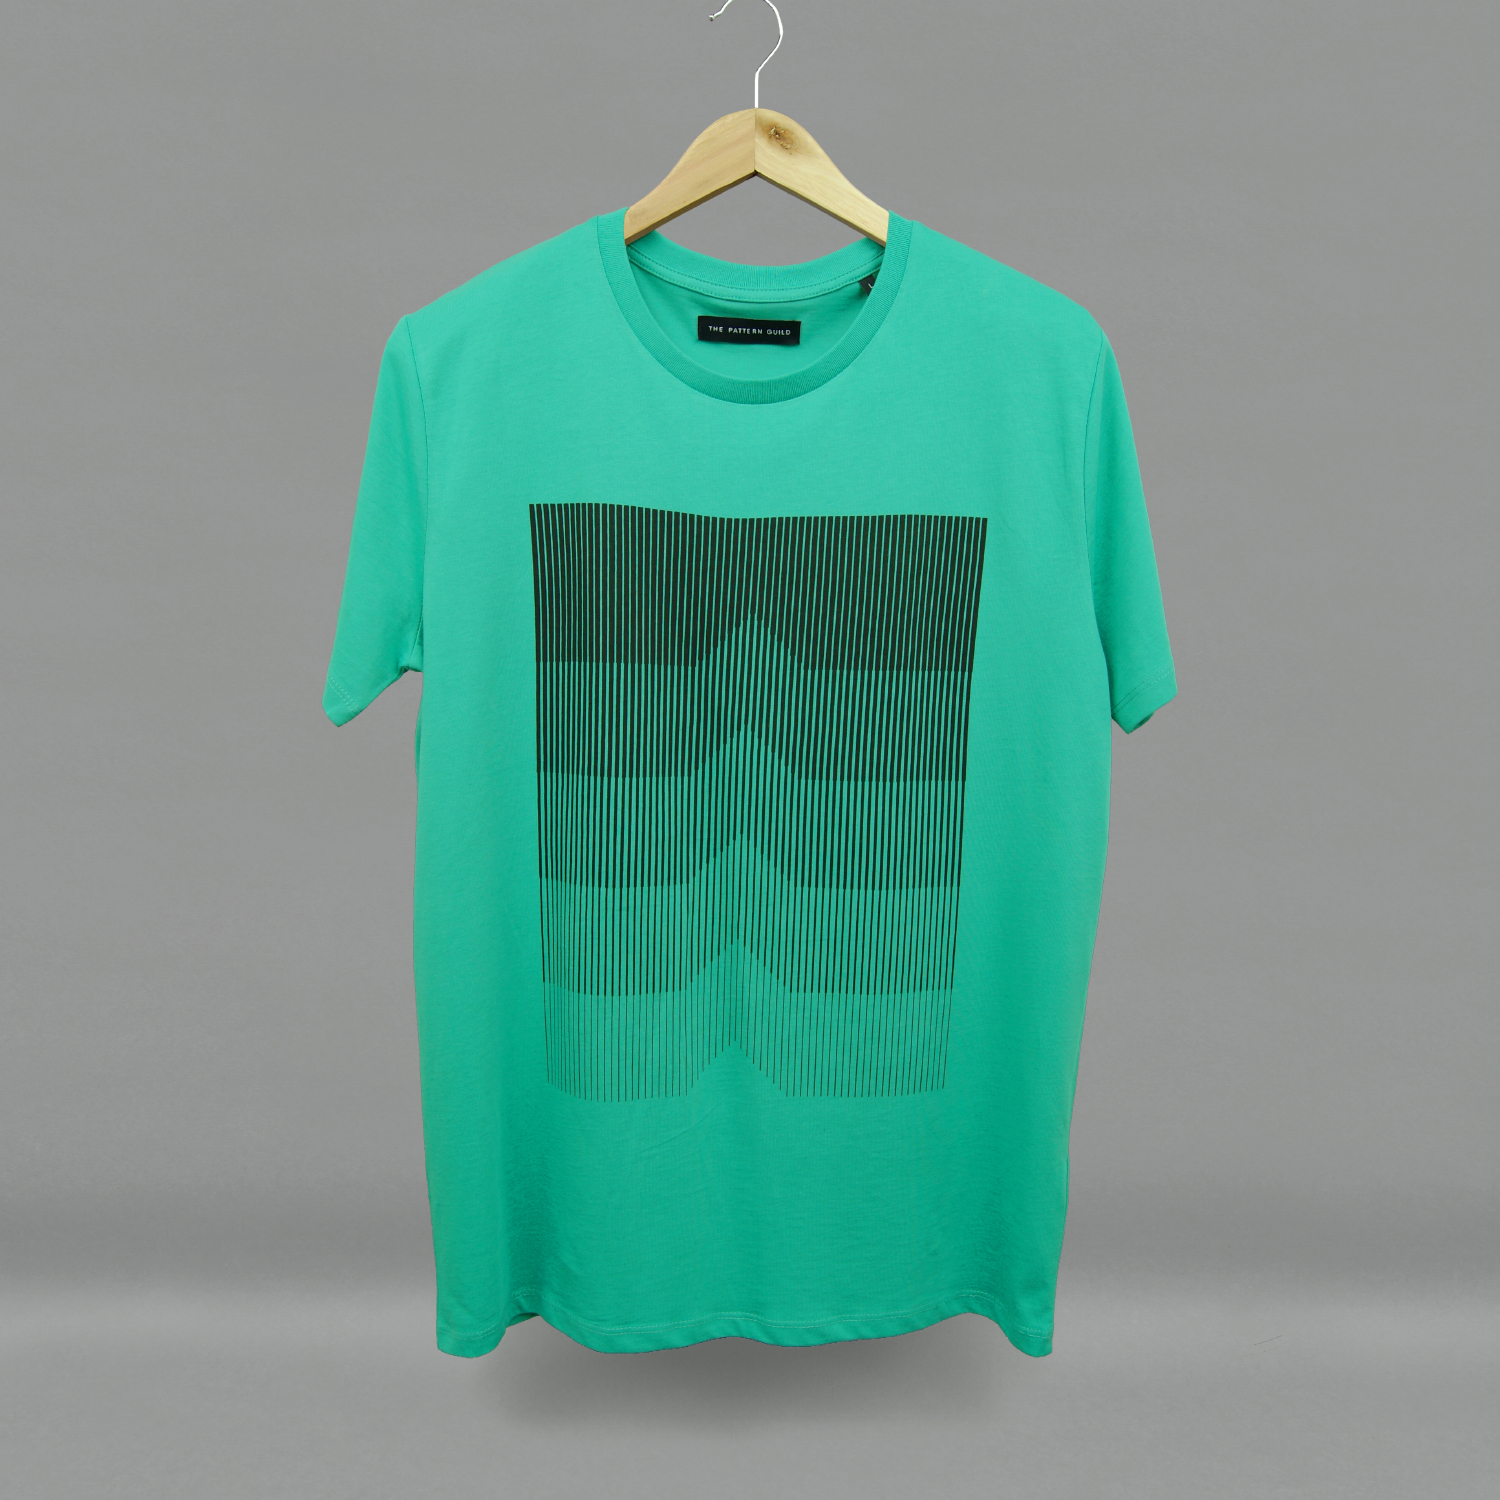 thepatternguild_t-shirt_gradient1.jpg